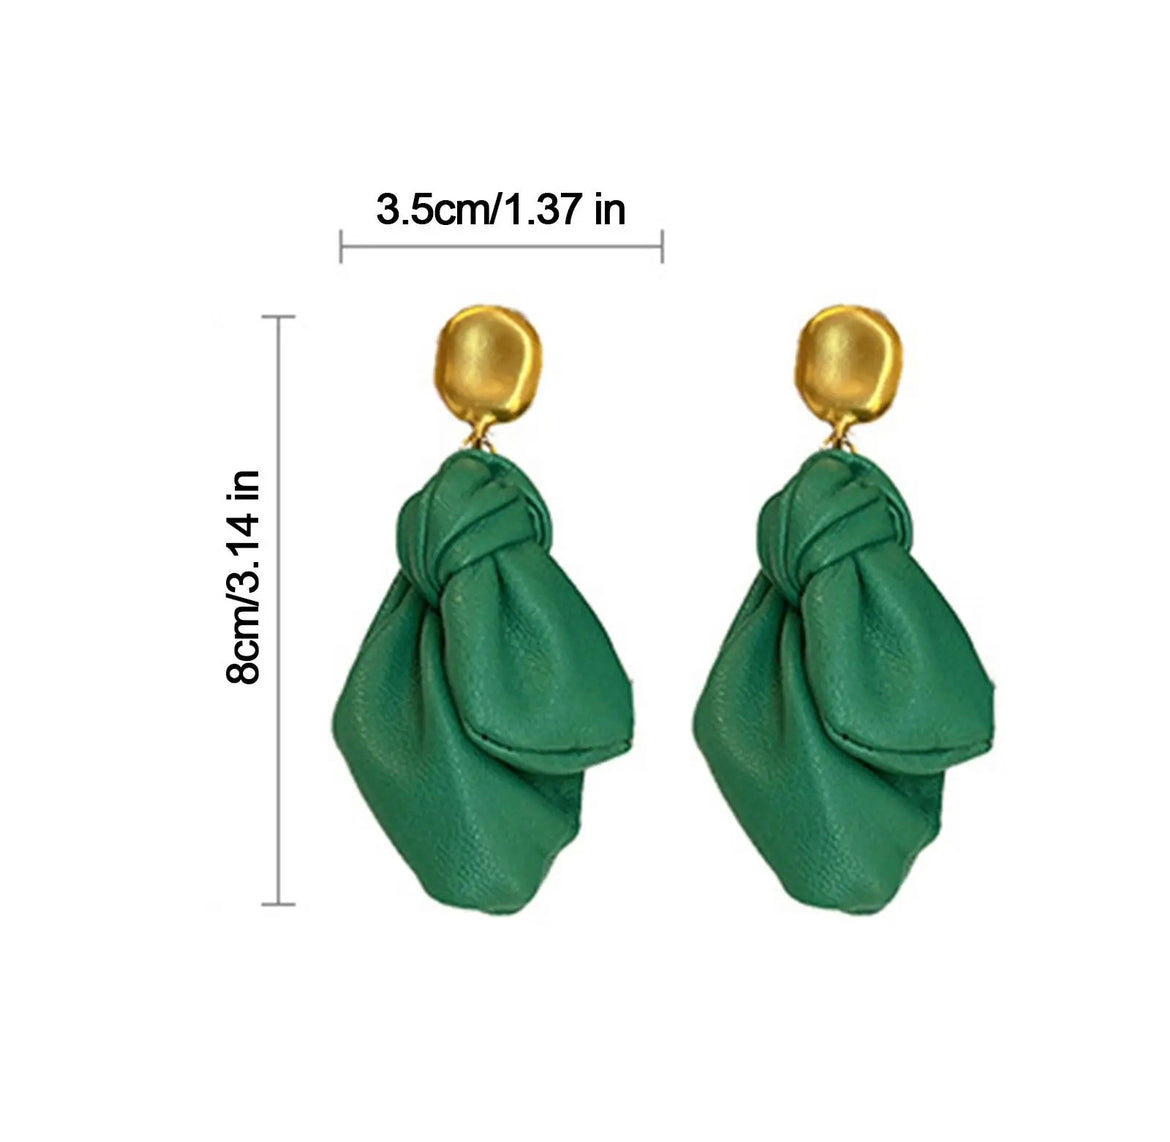 Green leather earrings